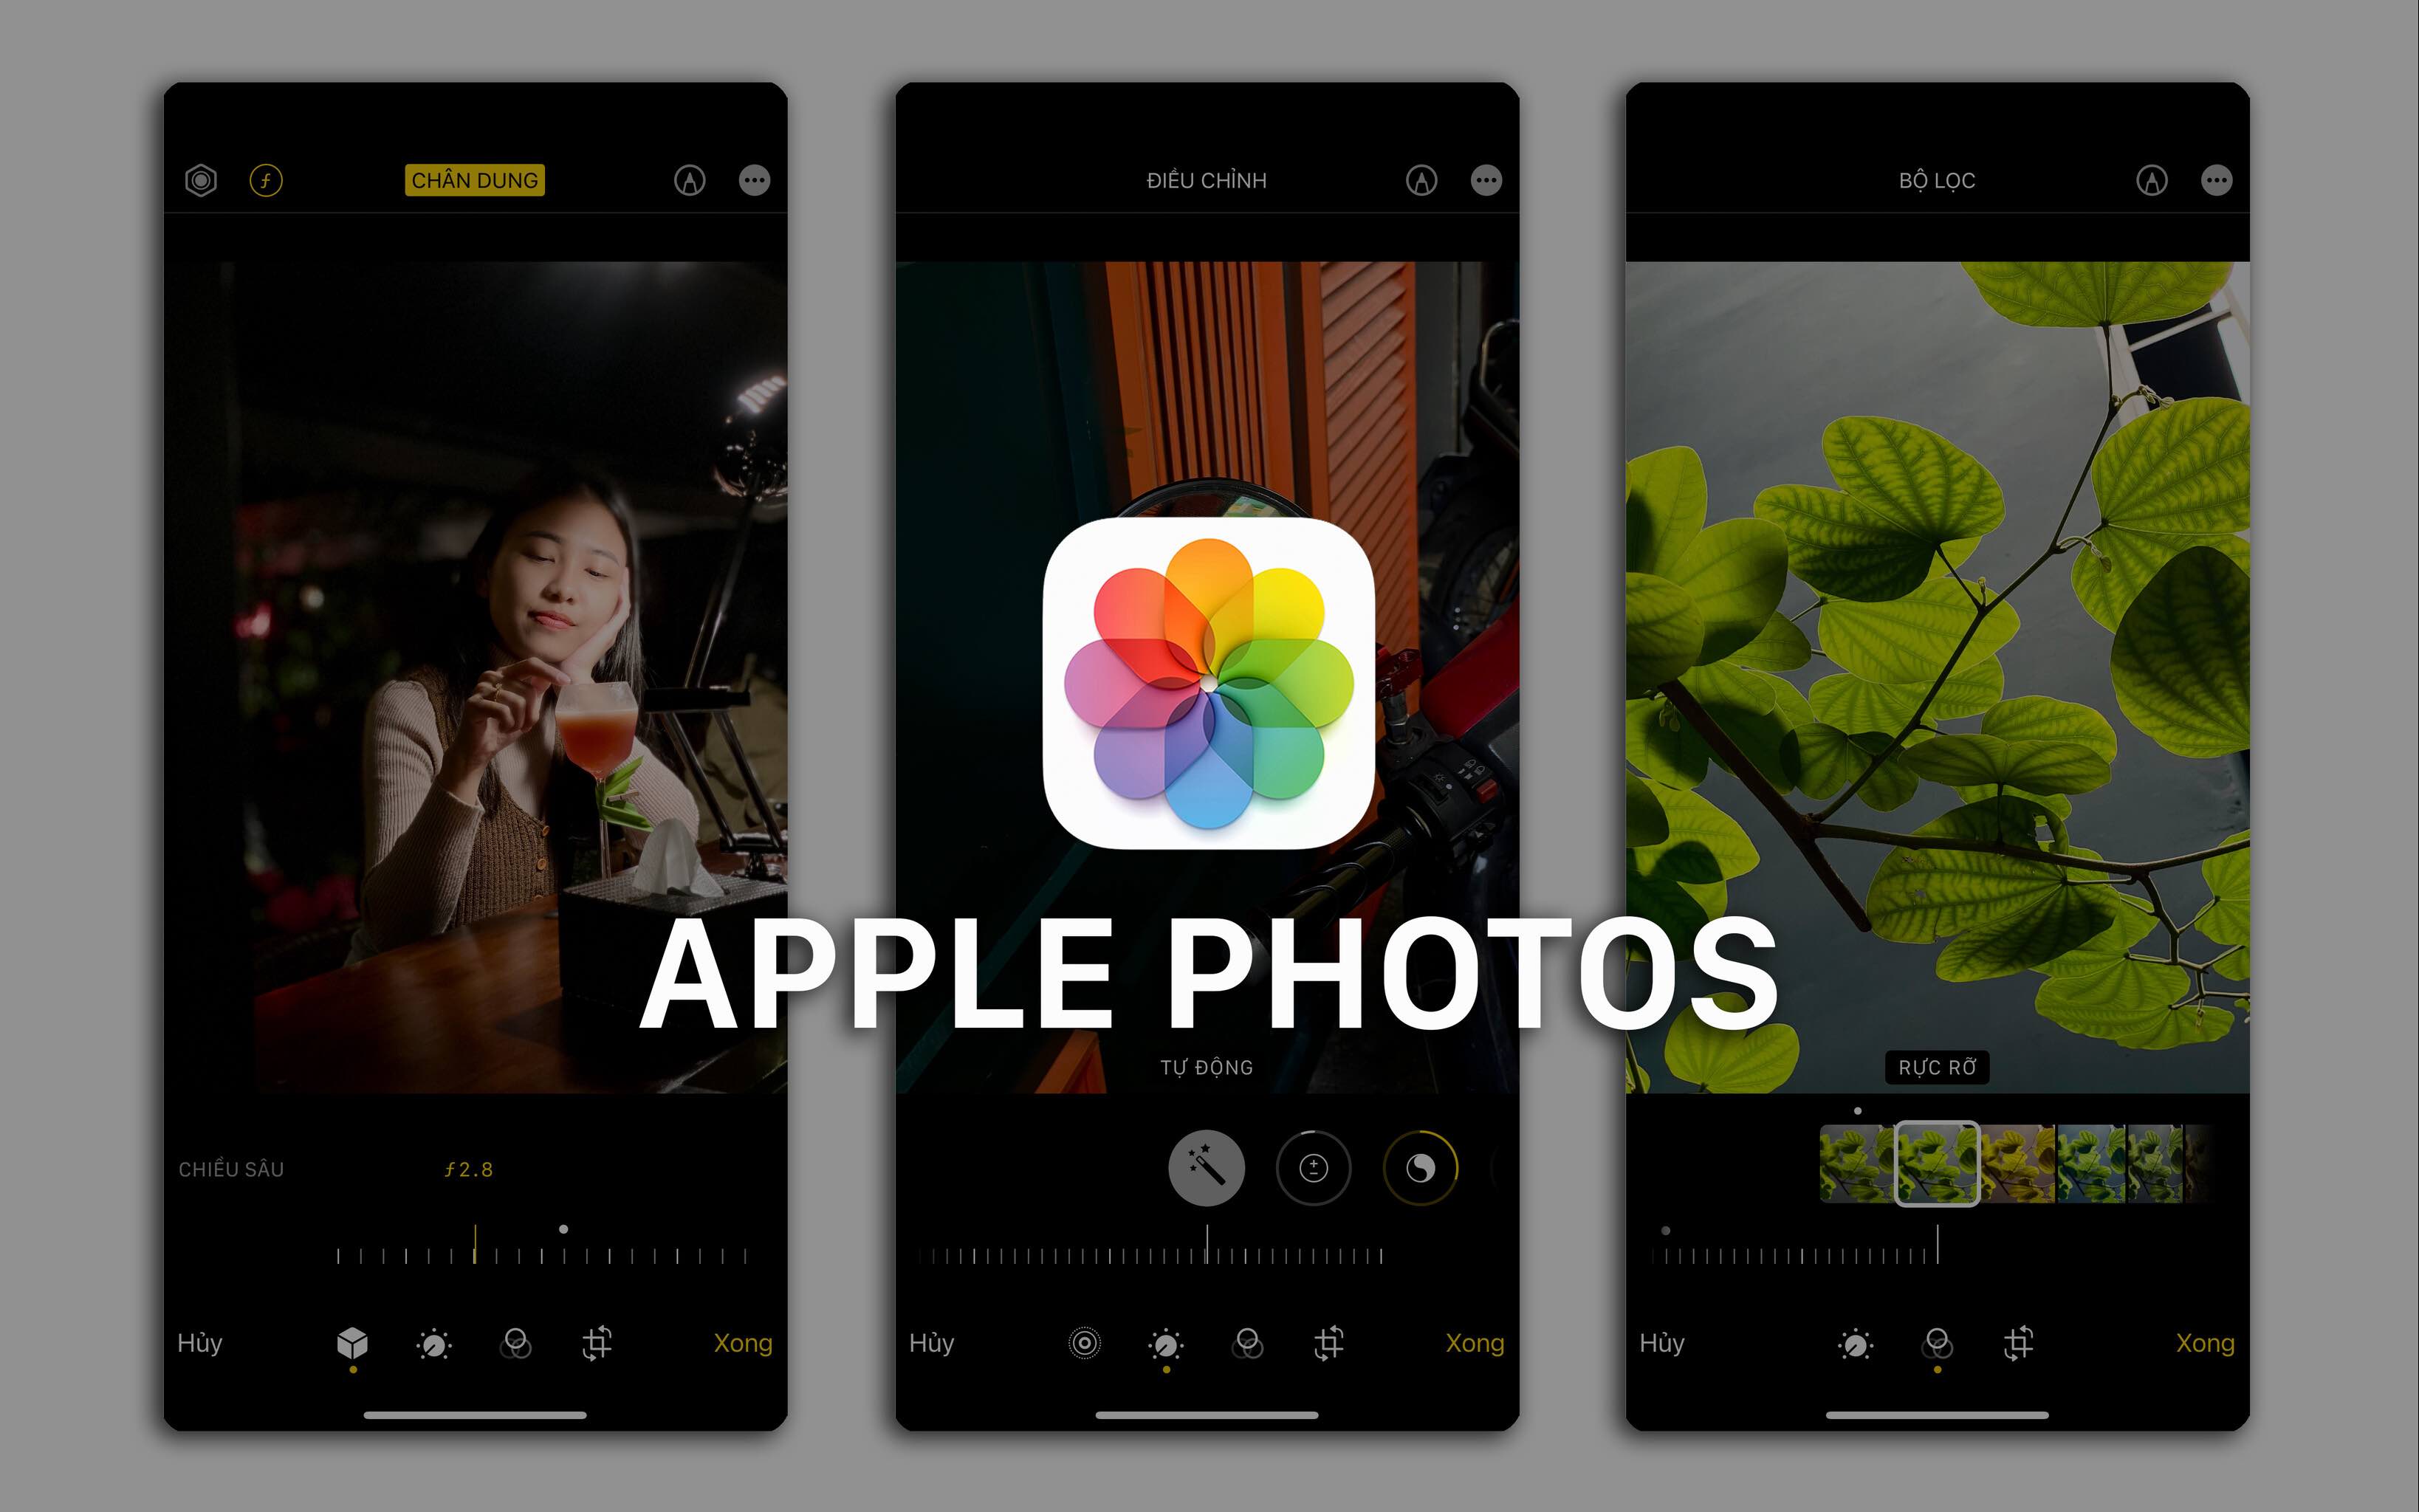 Apple Photos trên iPhone: Ứng dụng làm đẹp ảnh cho mọi nhà - Rất dễ sử dụng